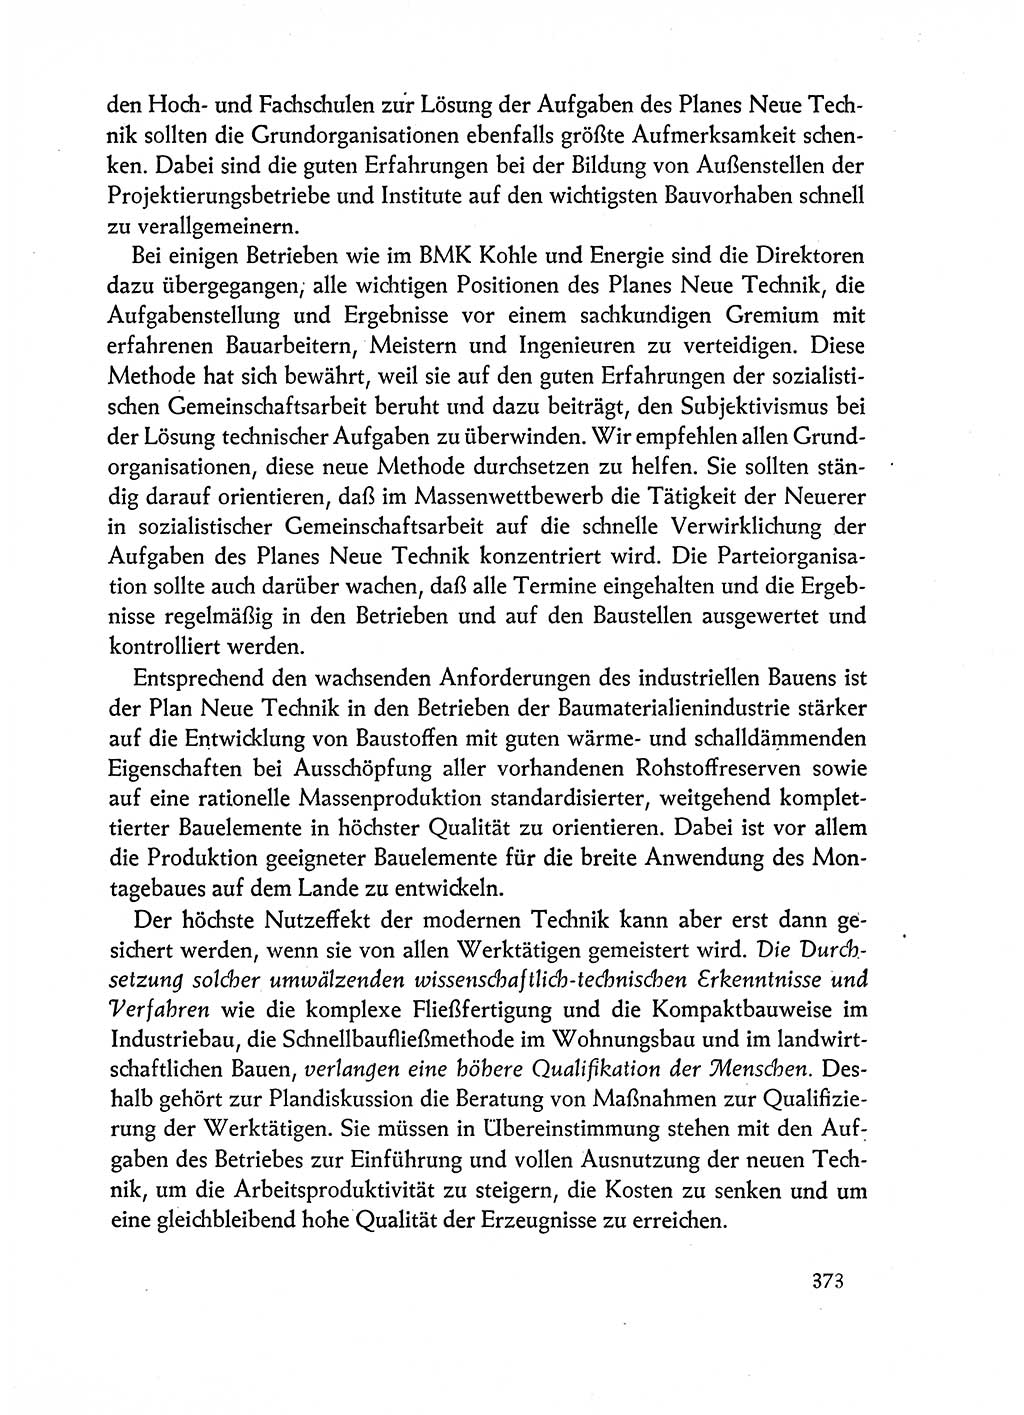 Dokumente der Sozialistischen Einheitspartei Deutschlands (SED) [Deutsche Demokratische Republik (DDR)] 1962-1963, Seite 373 (Dok. SED DDR 1962-1963, S. 373)